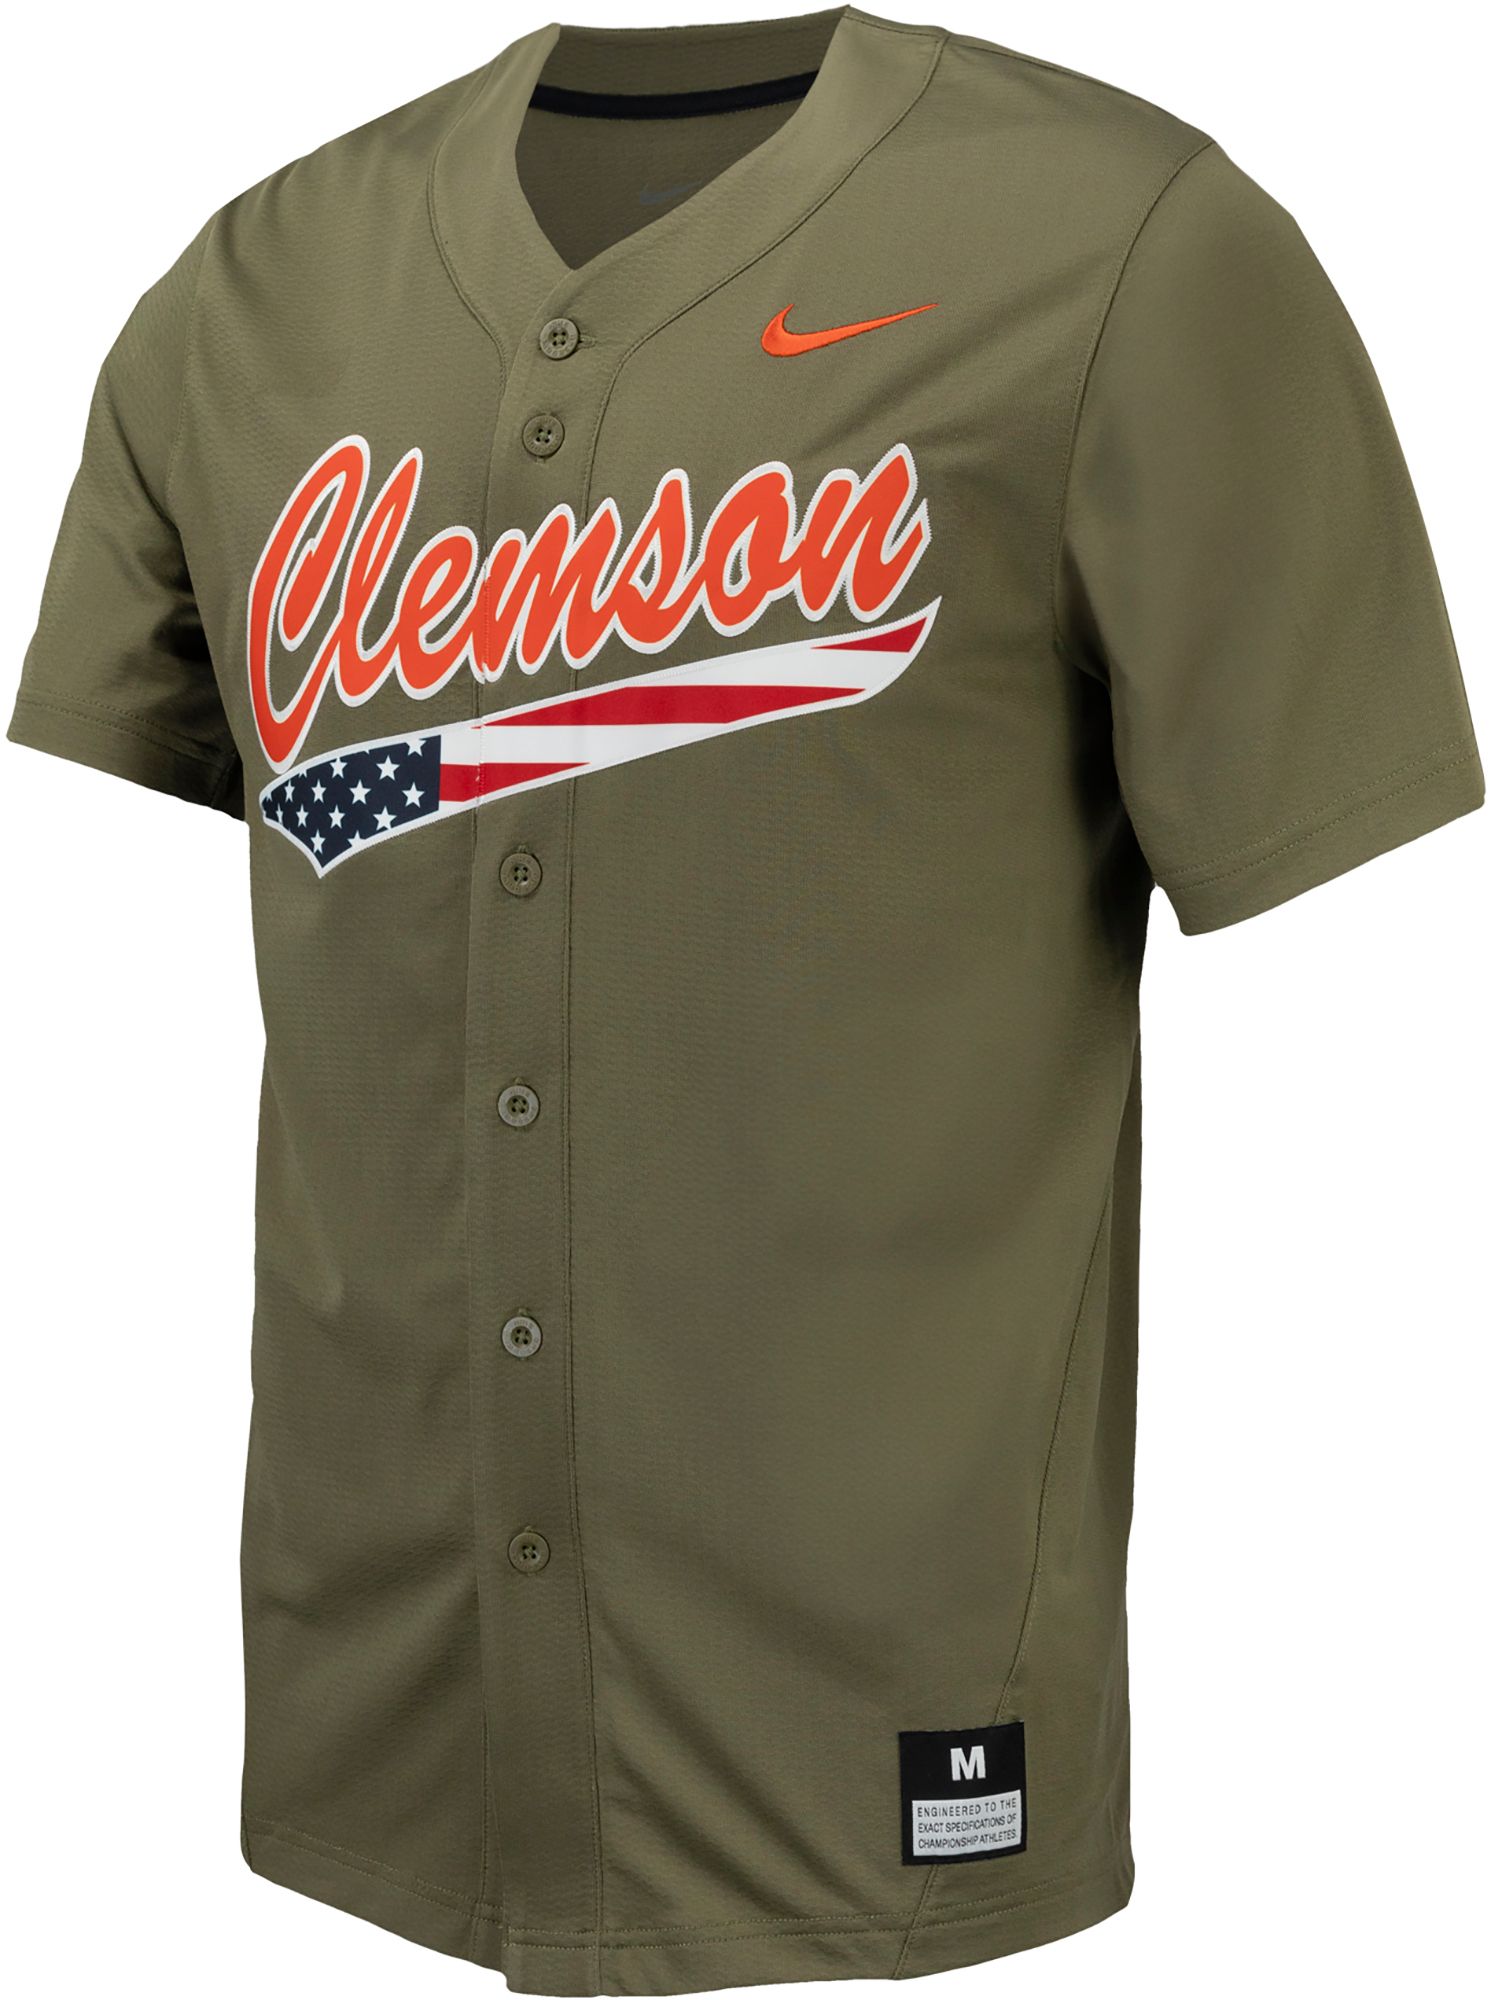 Clemson Tigers baseball gear